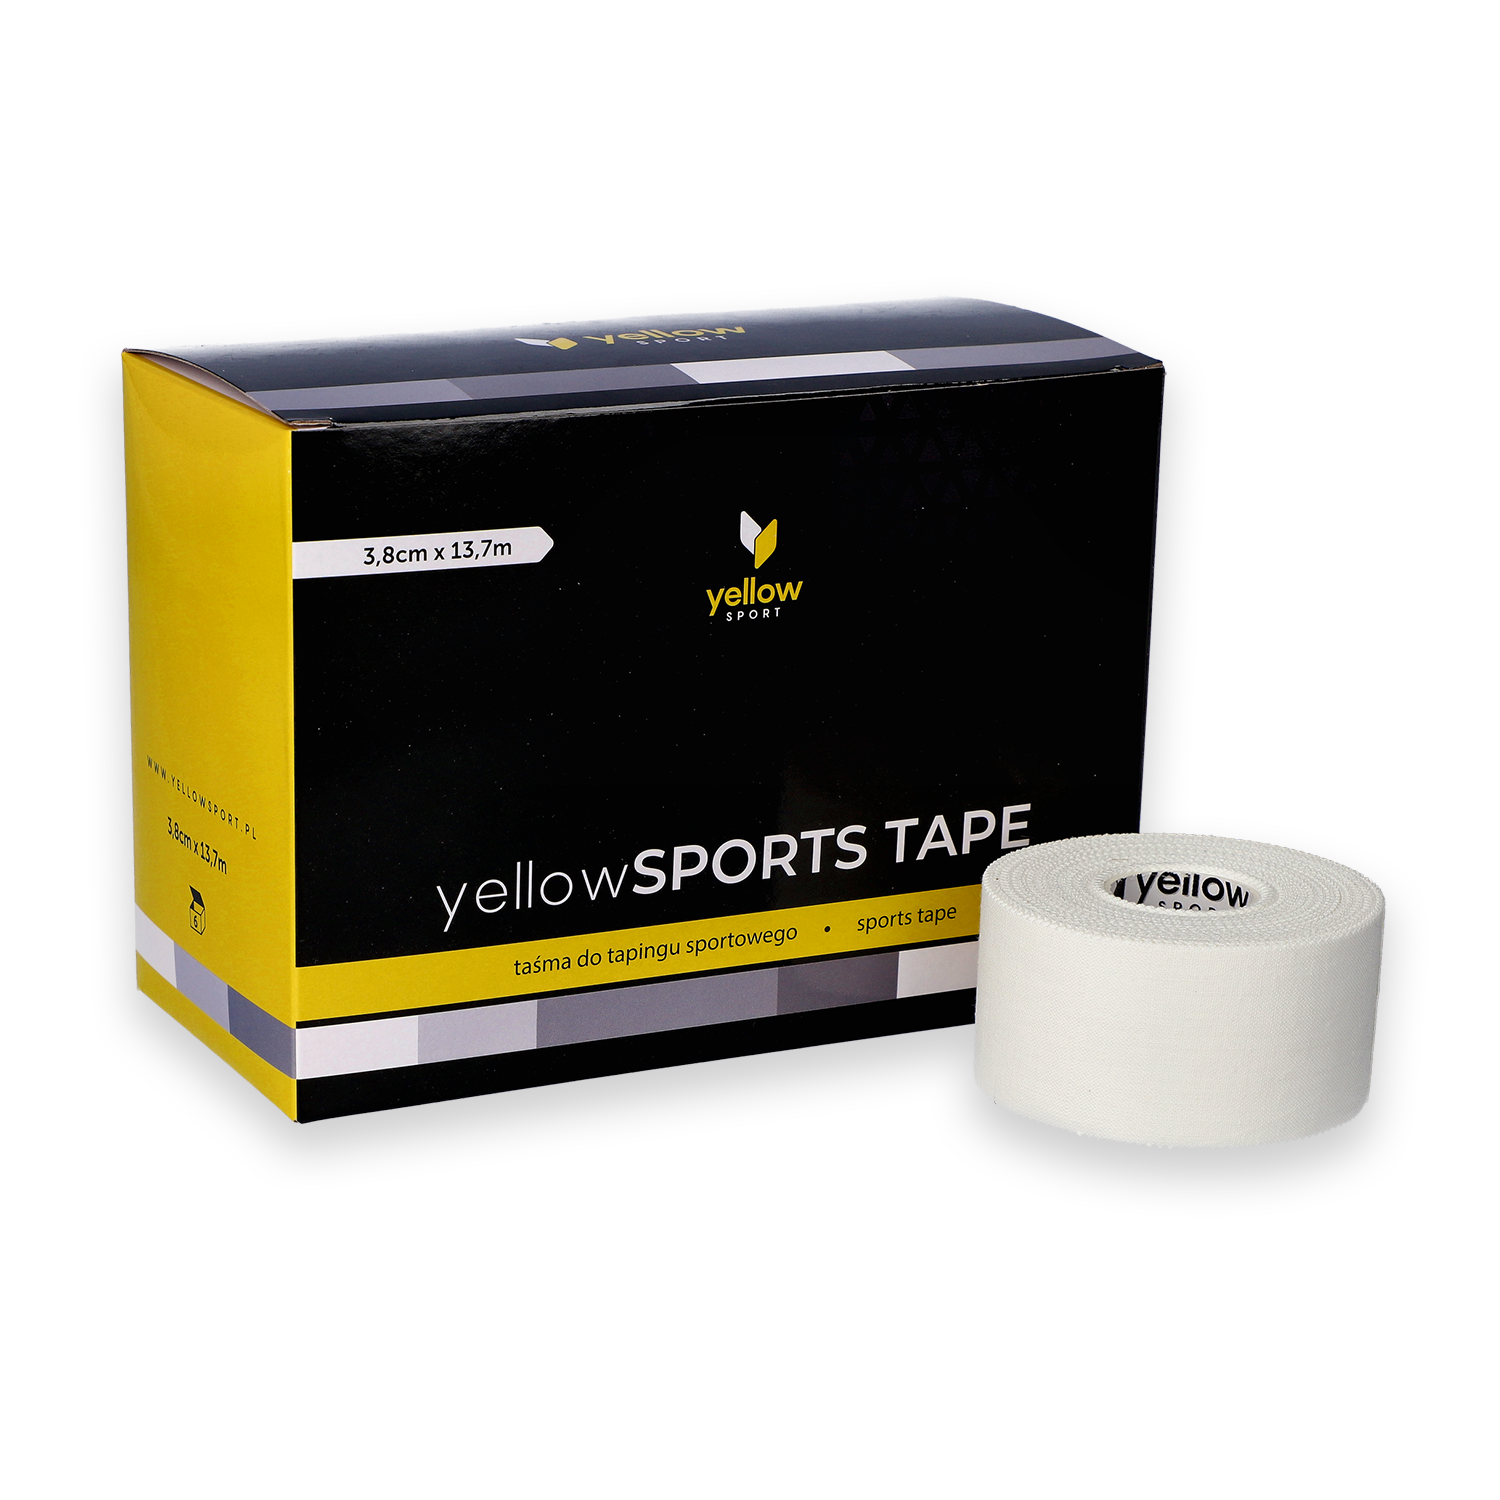 Taśma do tapingu sztywnego yellowSPORTS TAPE - biała, 3,8cm x 13,7m, 6 szt. 